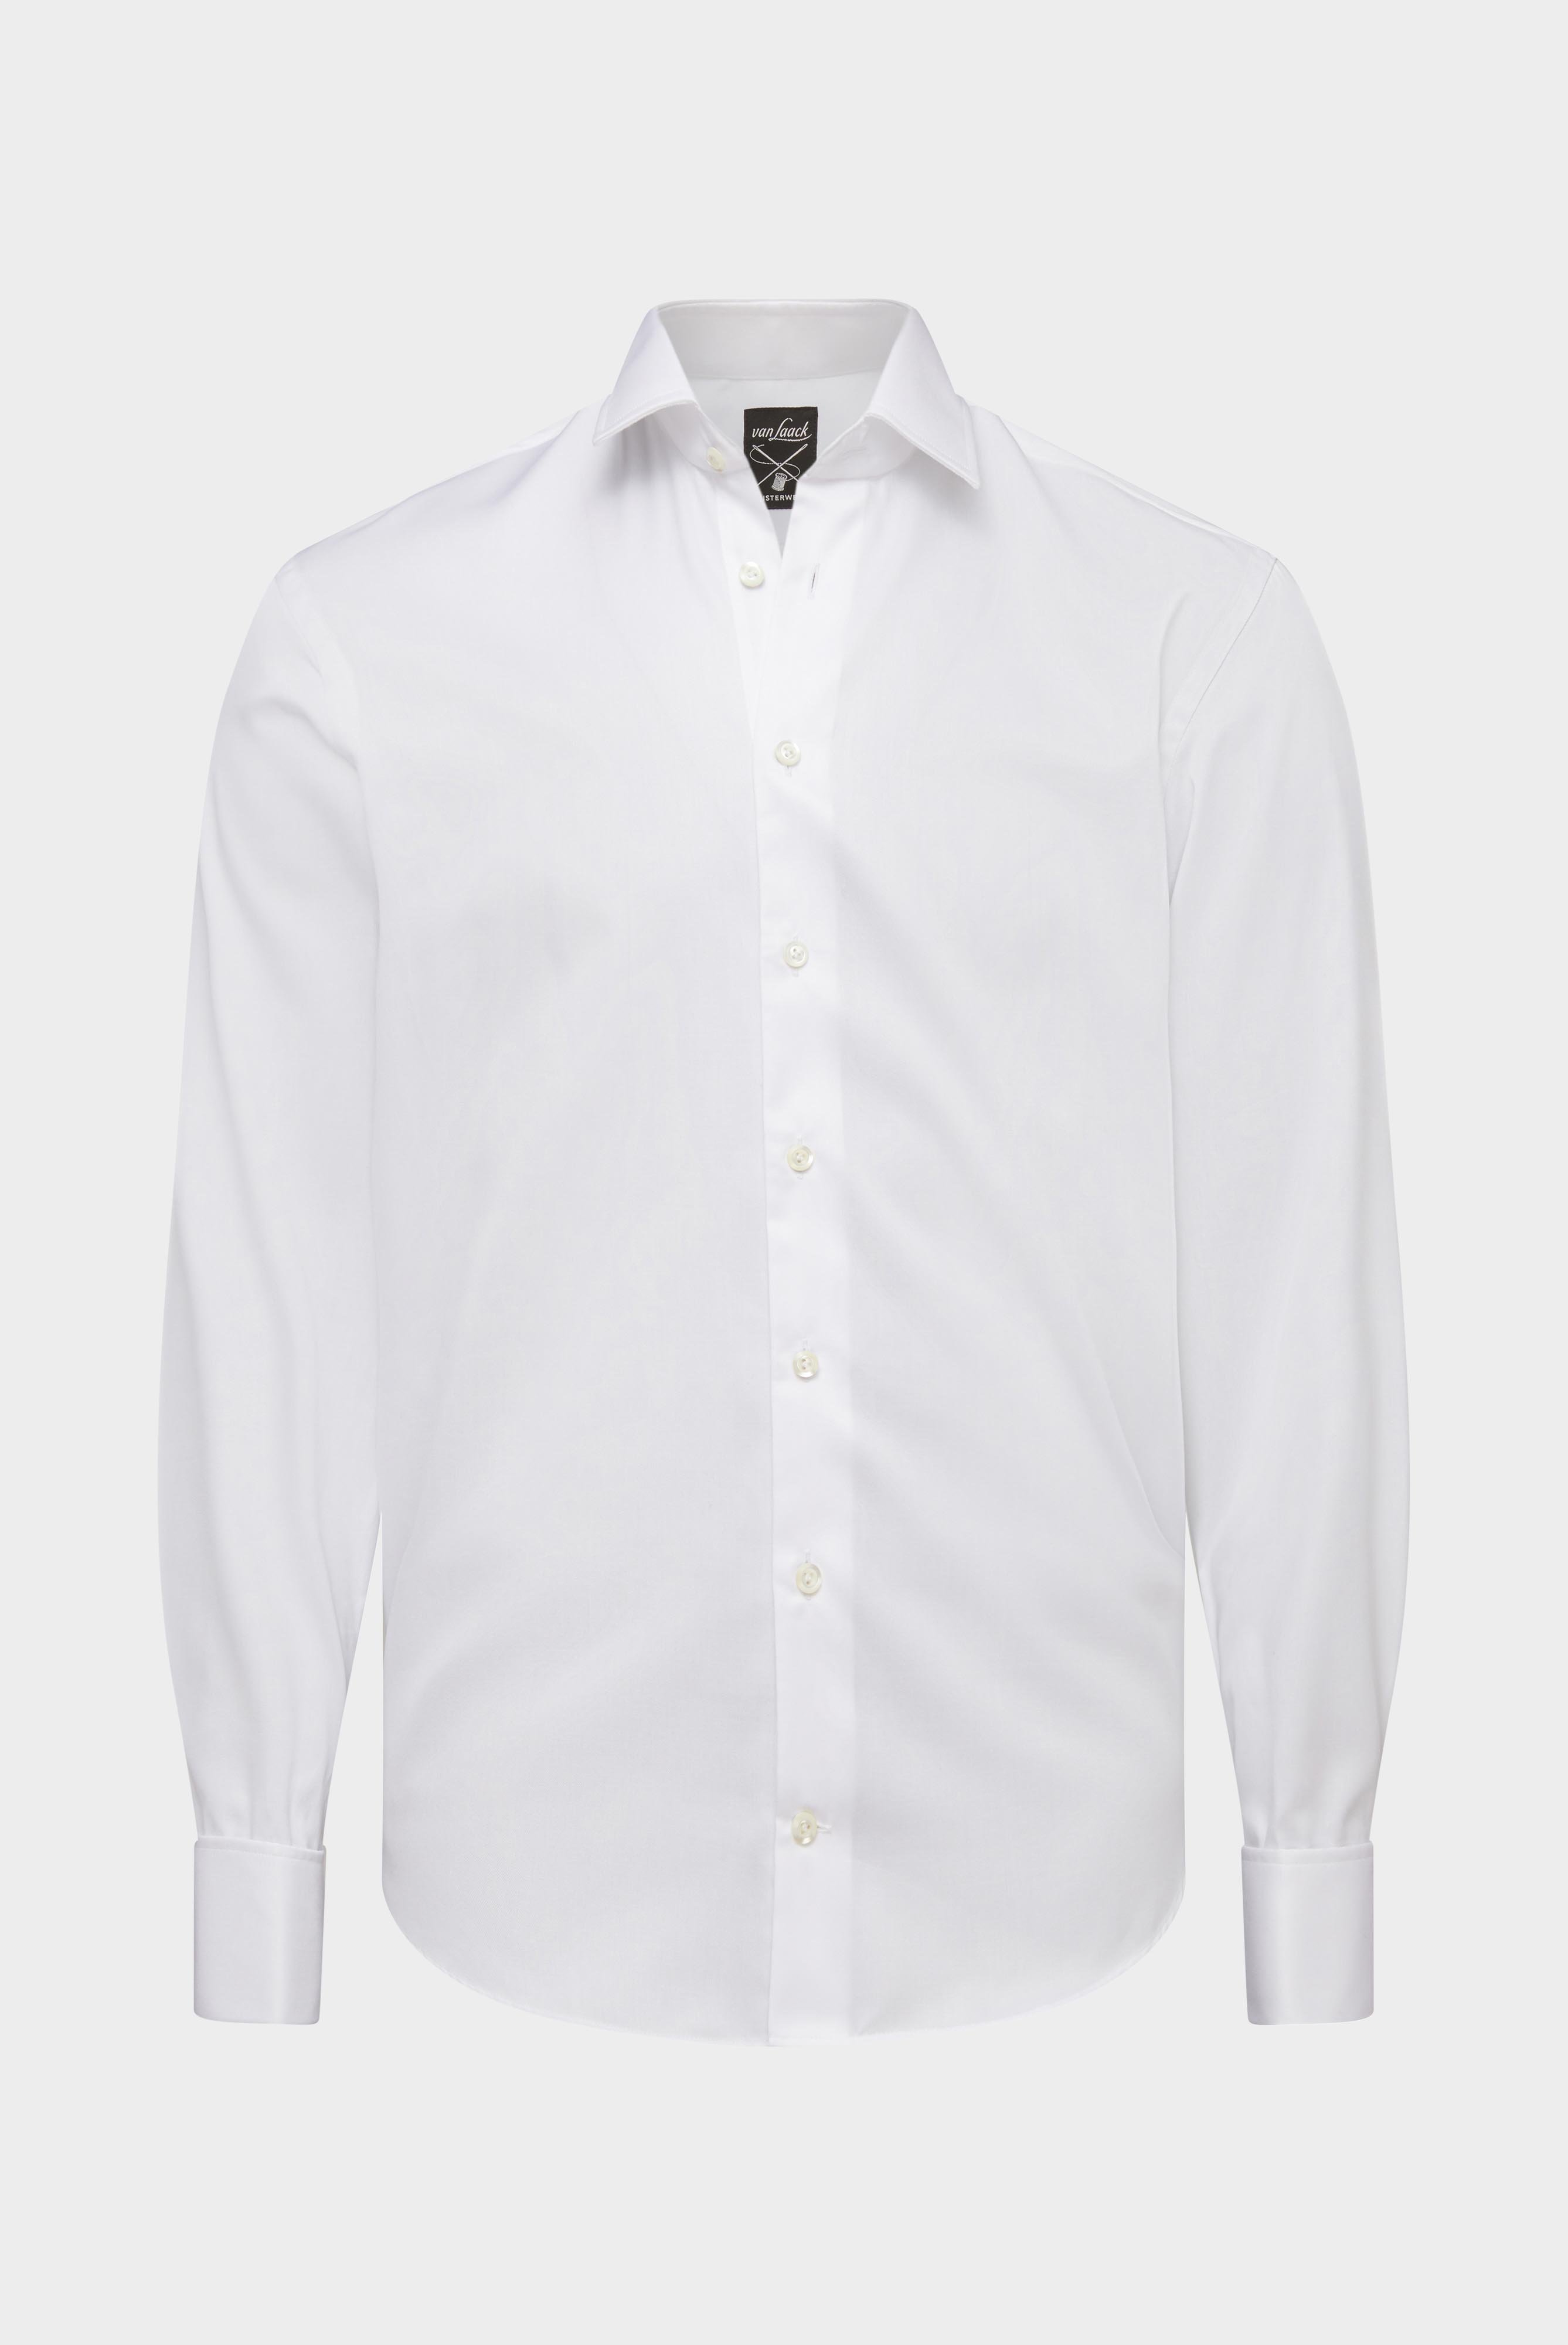 Bügelleichte Hemden+Bügelfreies Twill Hemd Tailor Fit+20.2045.BQ.132241.000.37